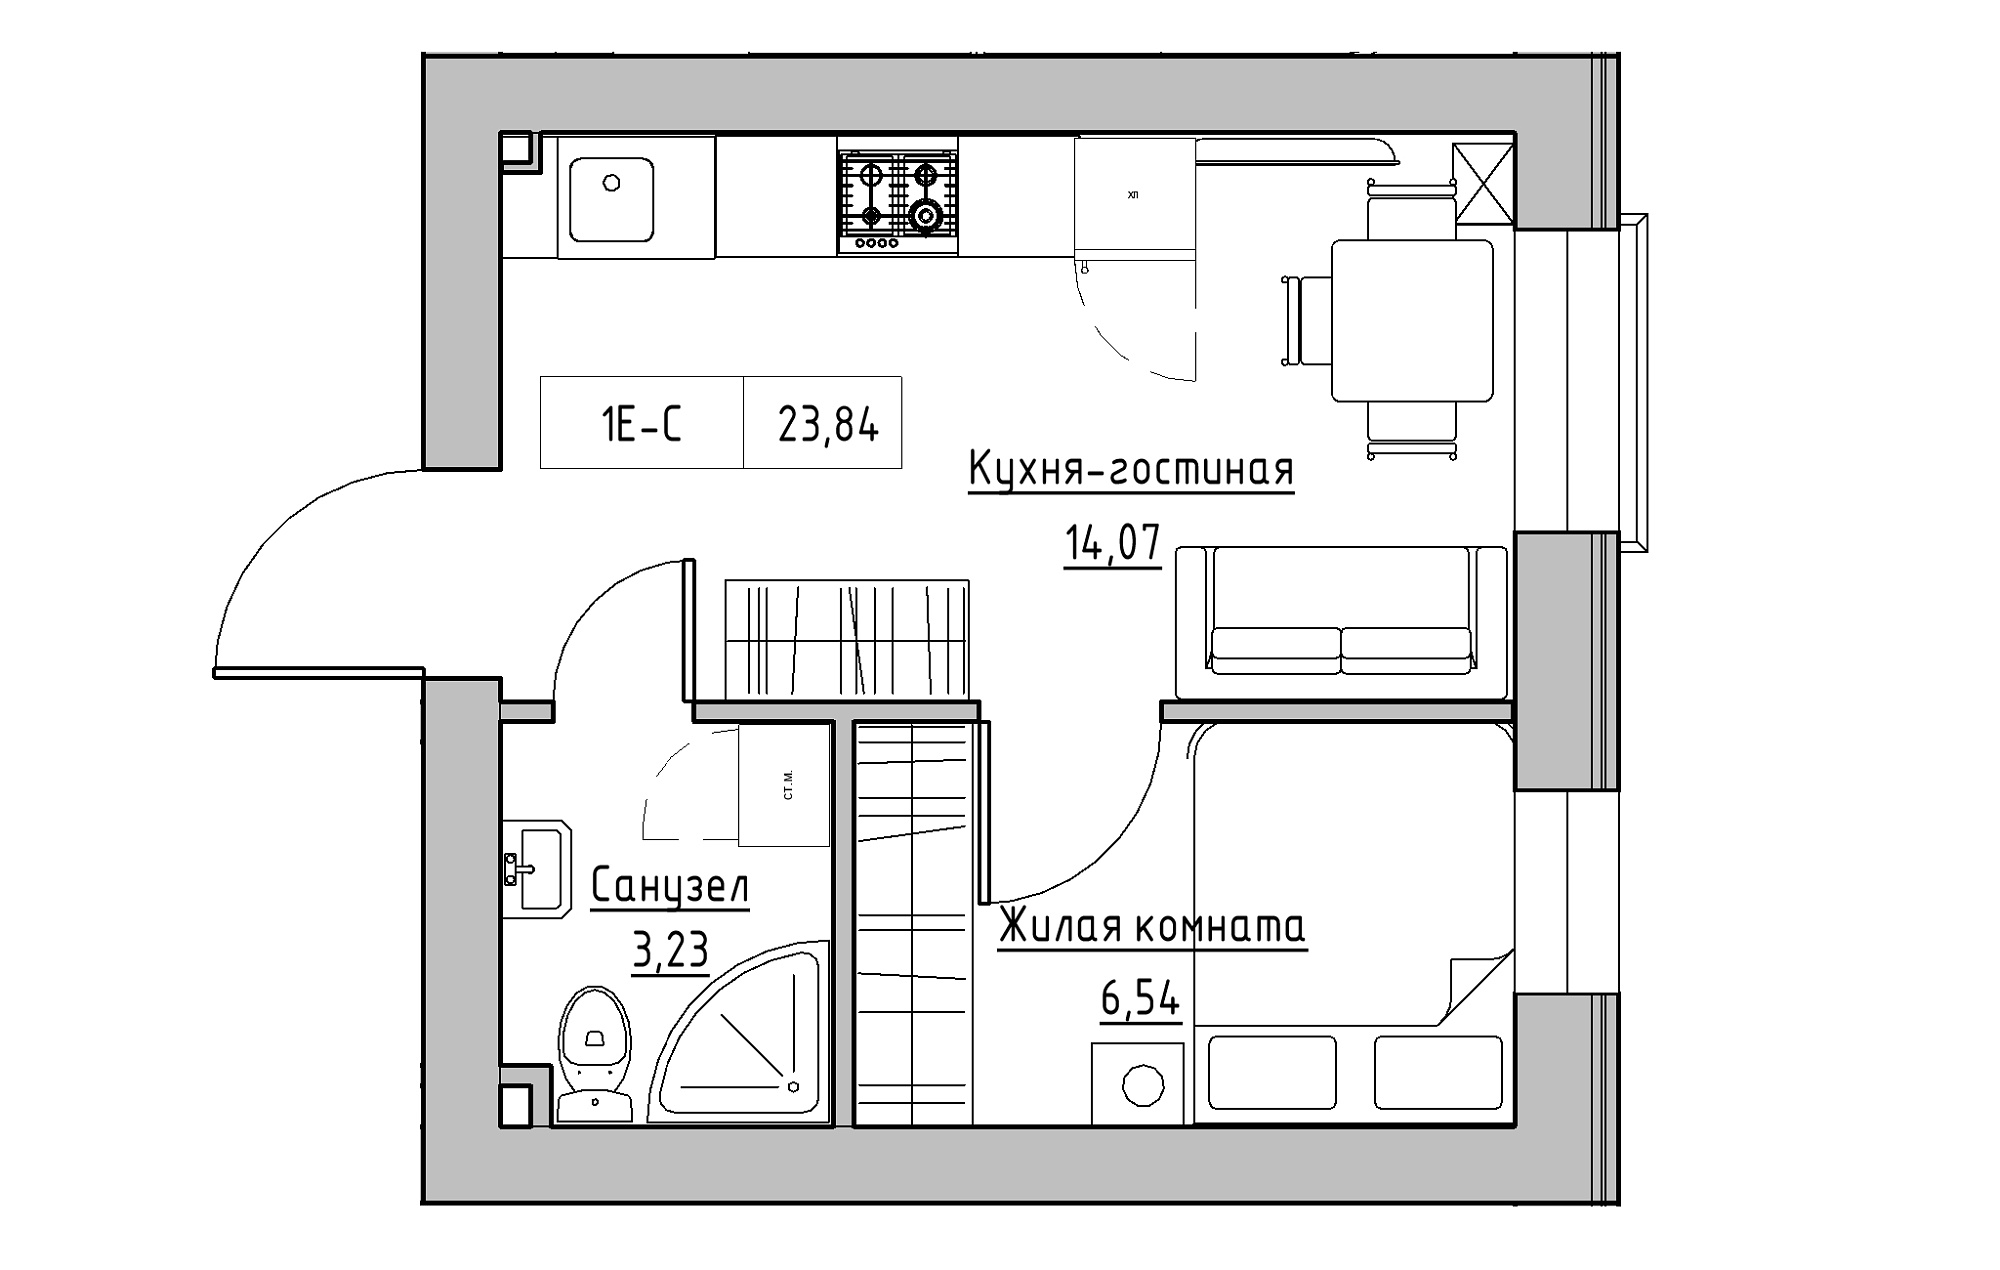 Планировка 1-к квартира площей 23.84м2, KS-018-03/0011.